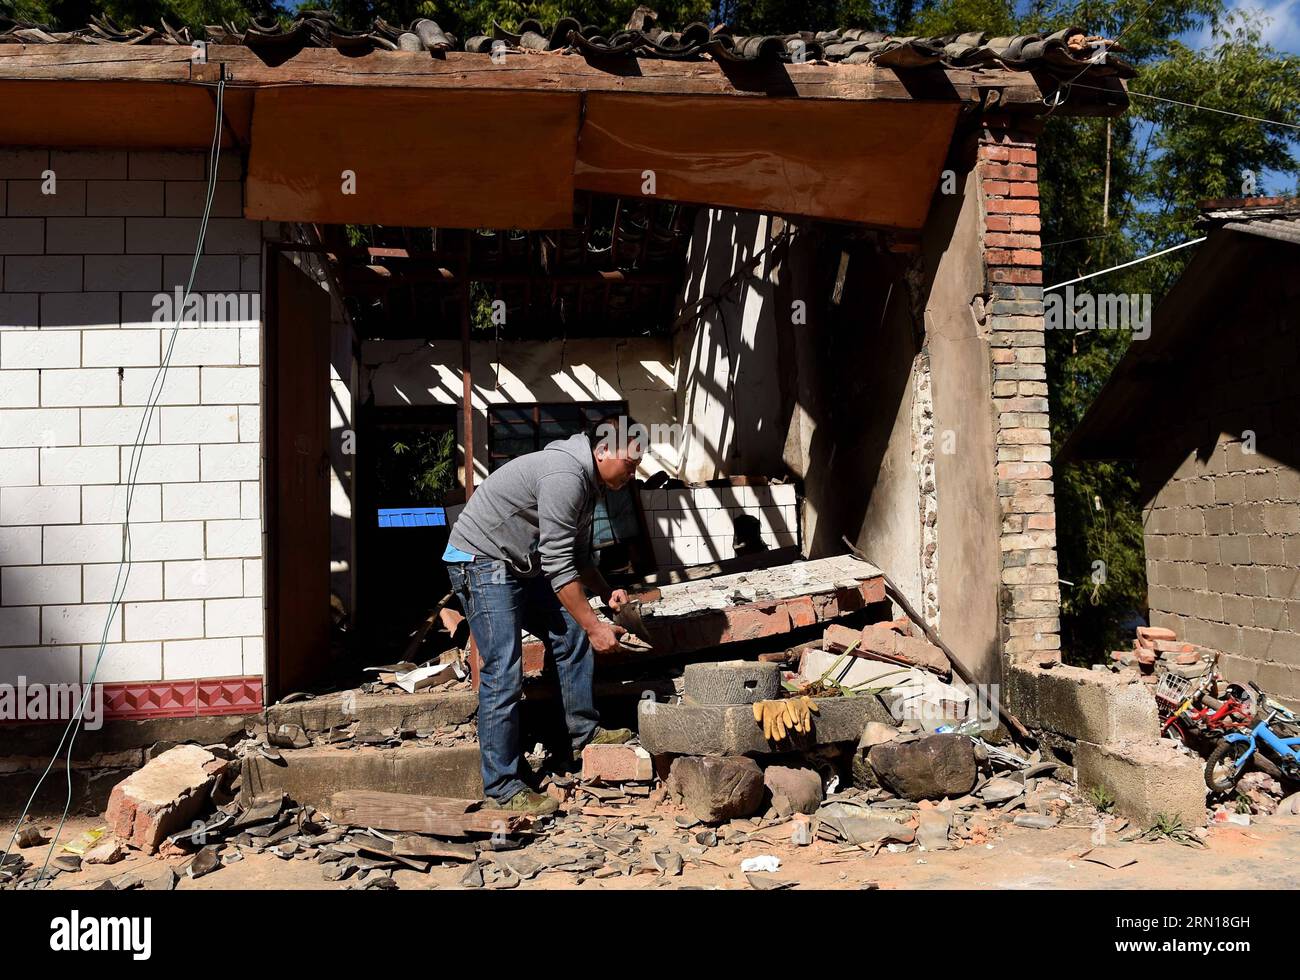 Zhou Xinwei del gruppo etnico dai cerca articoli utili sui detriti di una casa crollata nel villaggio Qiaviera di Yongping Town nella contea autonoma di Jinggu dai e Yi, nella provincia dello Yunnan della Cina sud-occidentale, 6 dicembre 2014. Sette persone sono rimaste ferite dopo un terremoto di magnitudo 5,8 che ha colpito Jinggu sabato mattina presto. (wf) CHINA-YUNNAN-JINGGU-EARTHQUAKE(CN) LinxYiguang PUBLICATIONxNOTxINxCHN Zhou Xinwei del gruppo etnico dai cerca articoli utili SUI detriti di una casa crollata NEL villaggio Quake Hit di Yong Ping Town in dai e Yi Autonomous County Southwest China Foto Stock